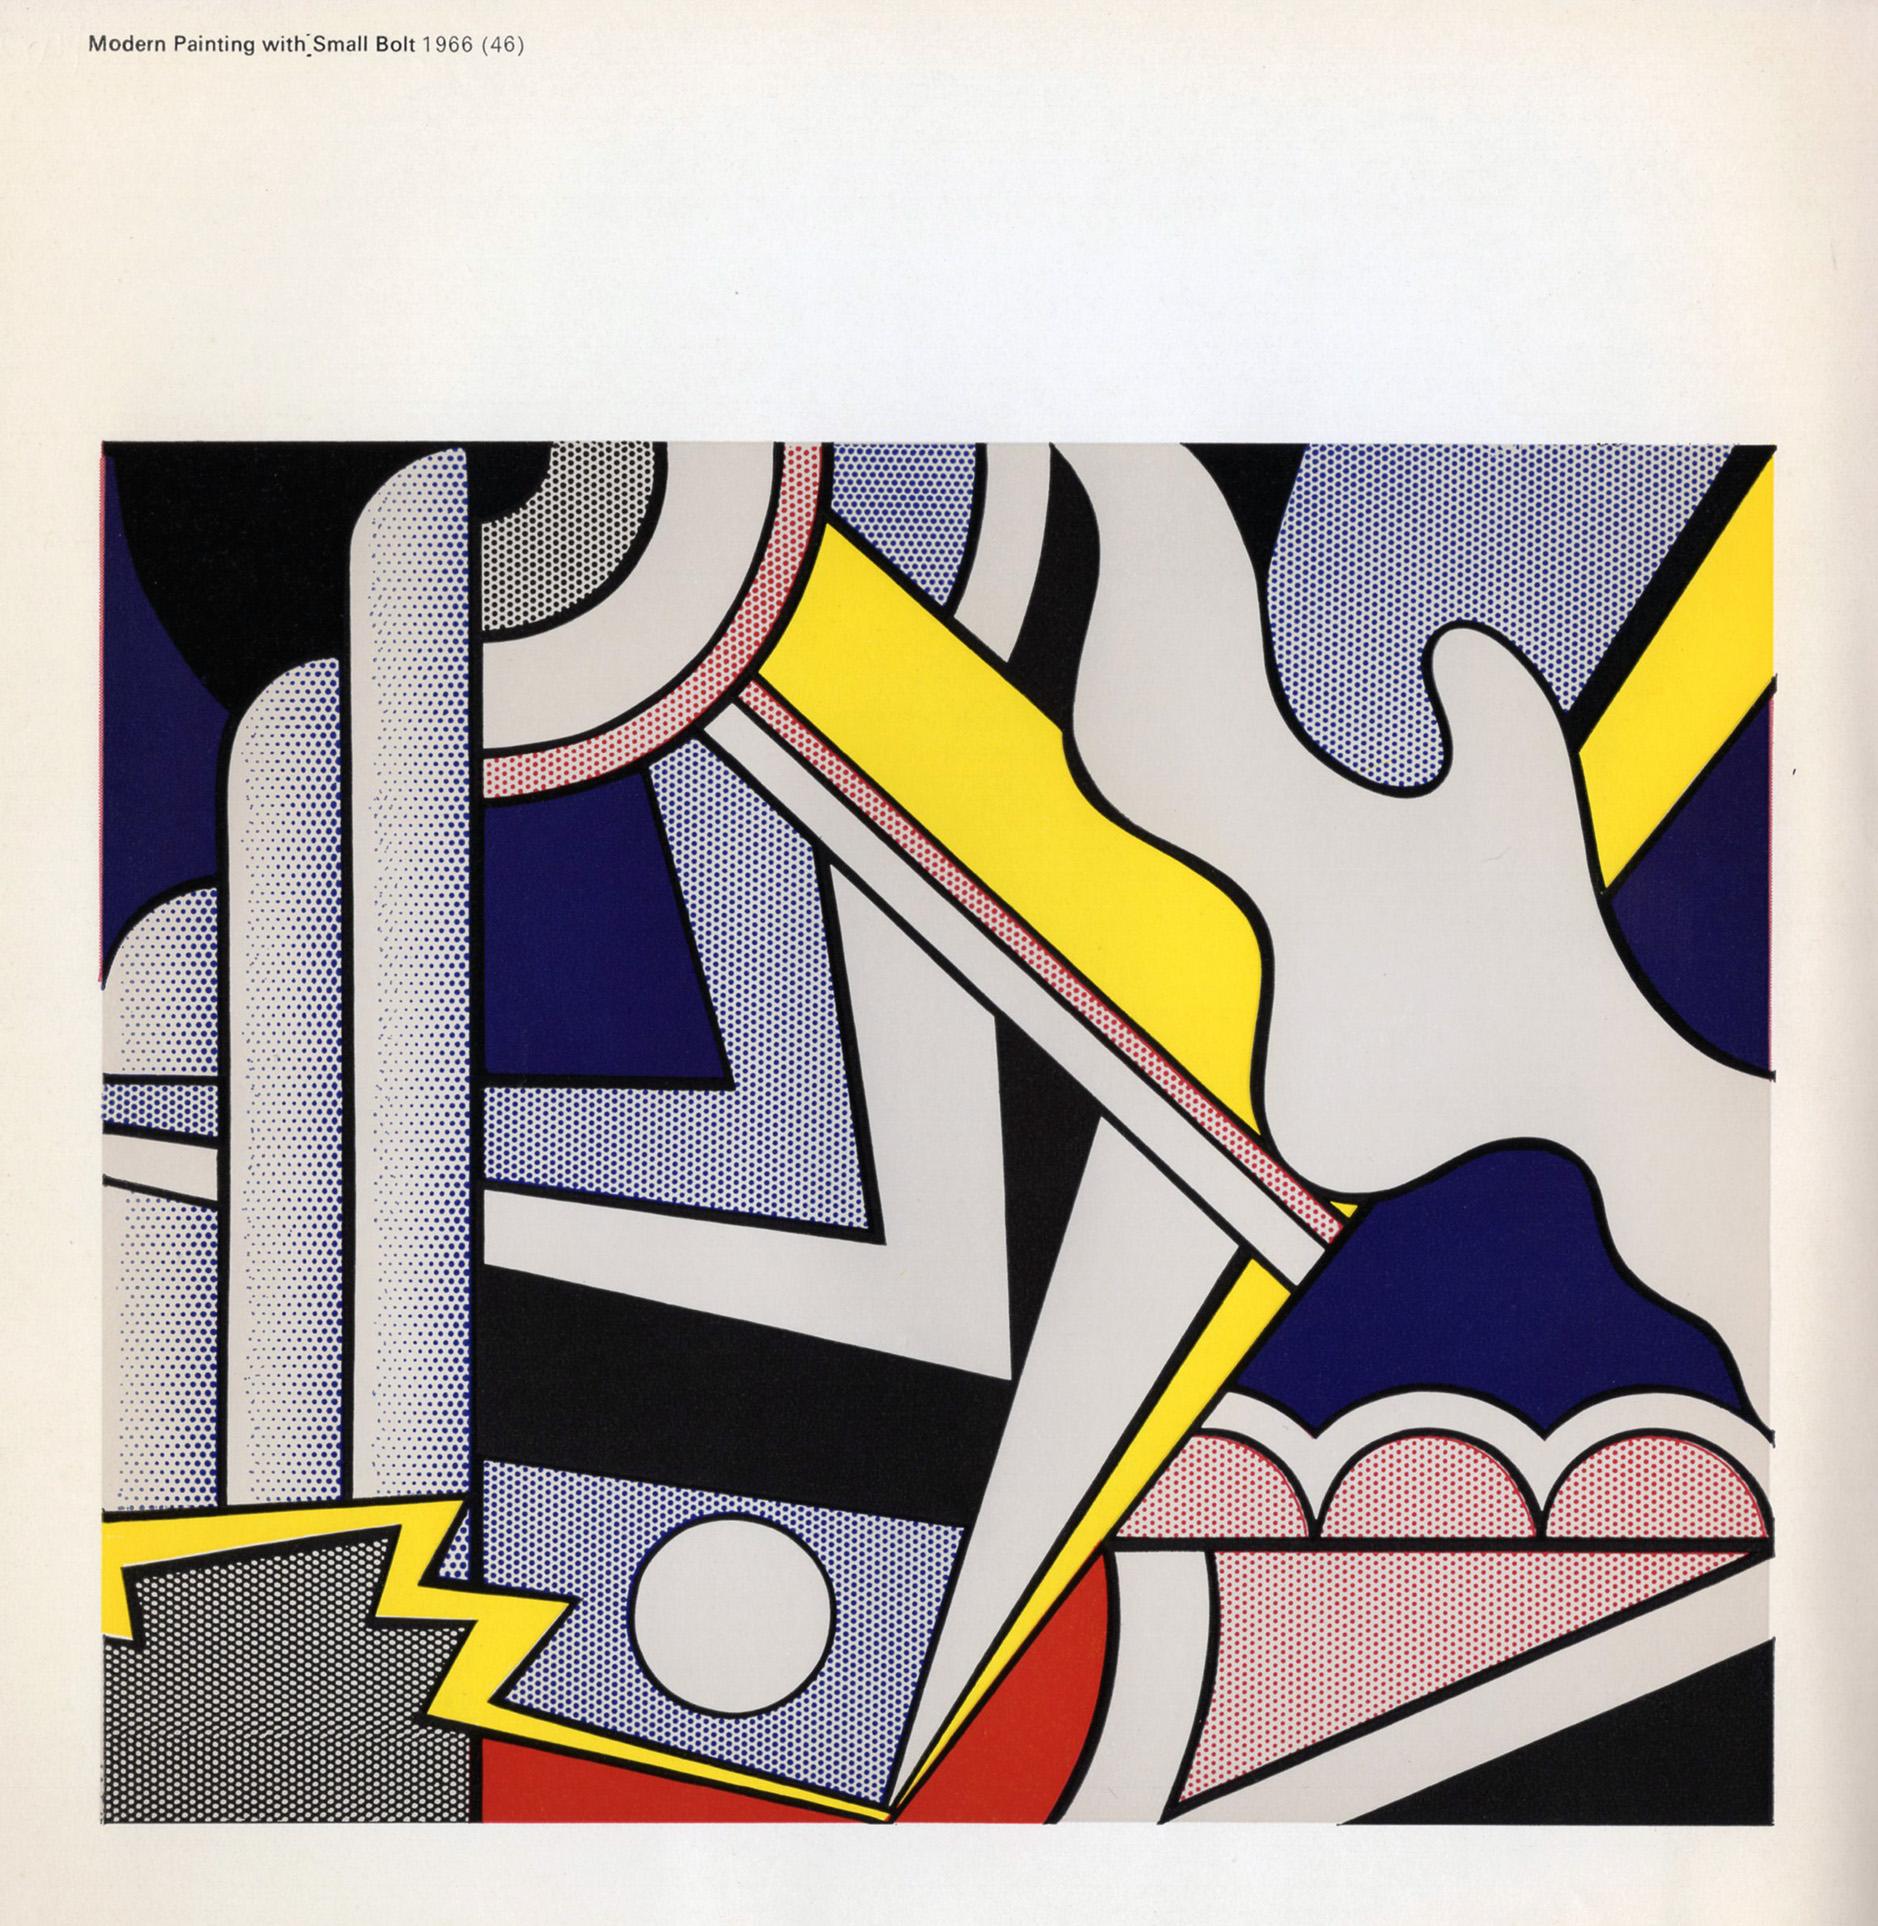 Mid-20th Century Roy Lichtenstein at The Tate Gallery 1968 'Exhibition Catalog'